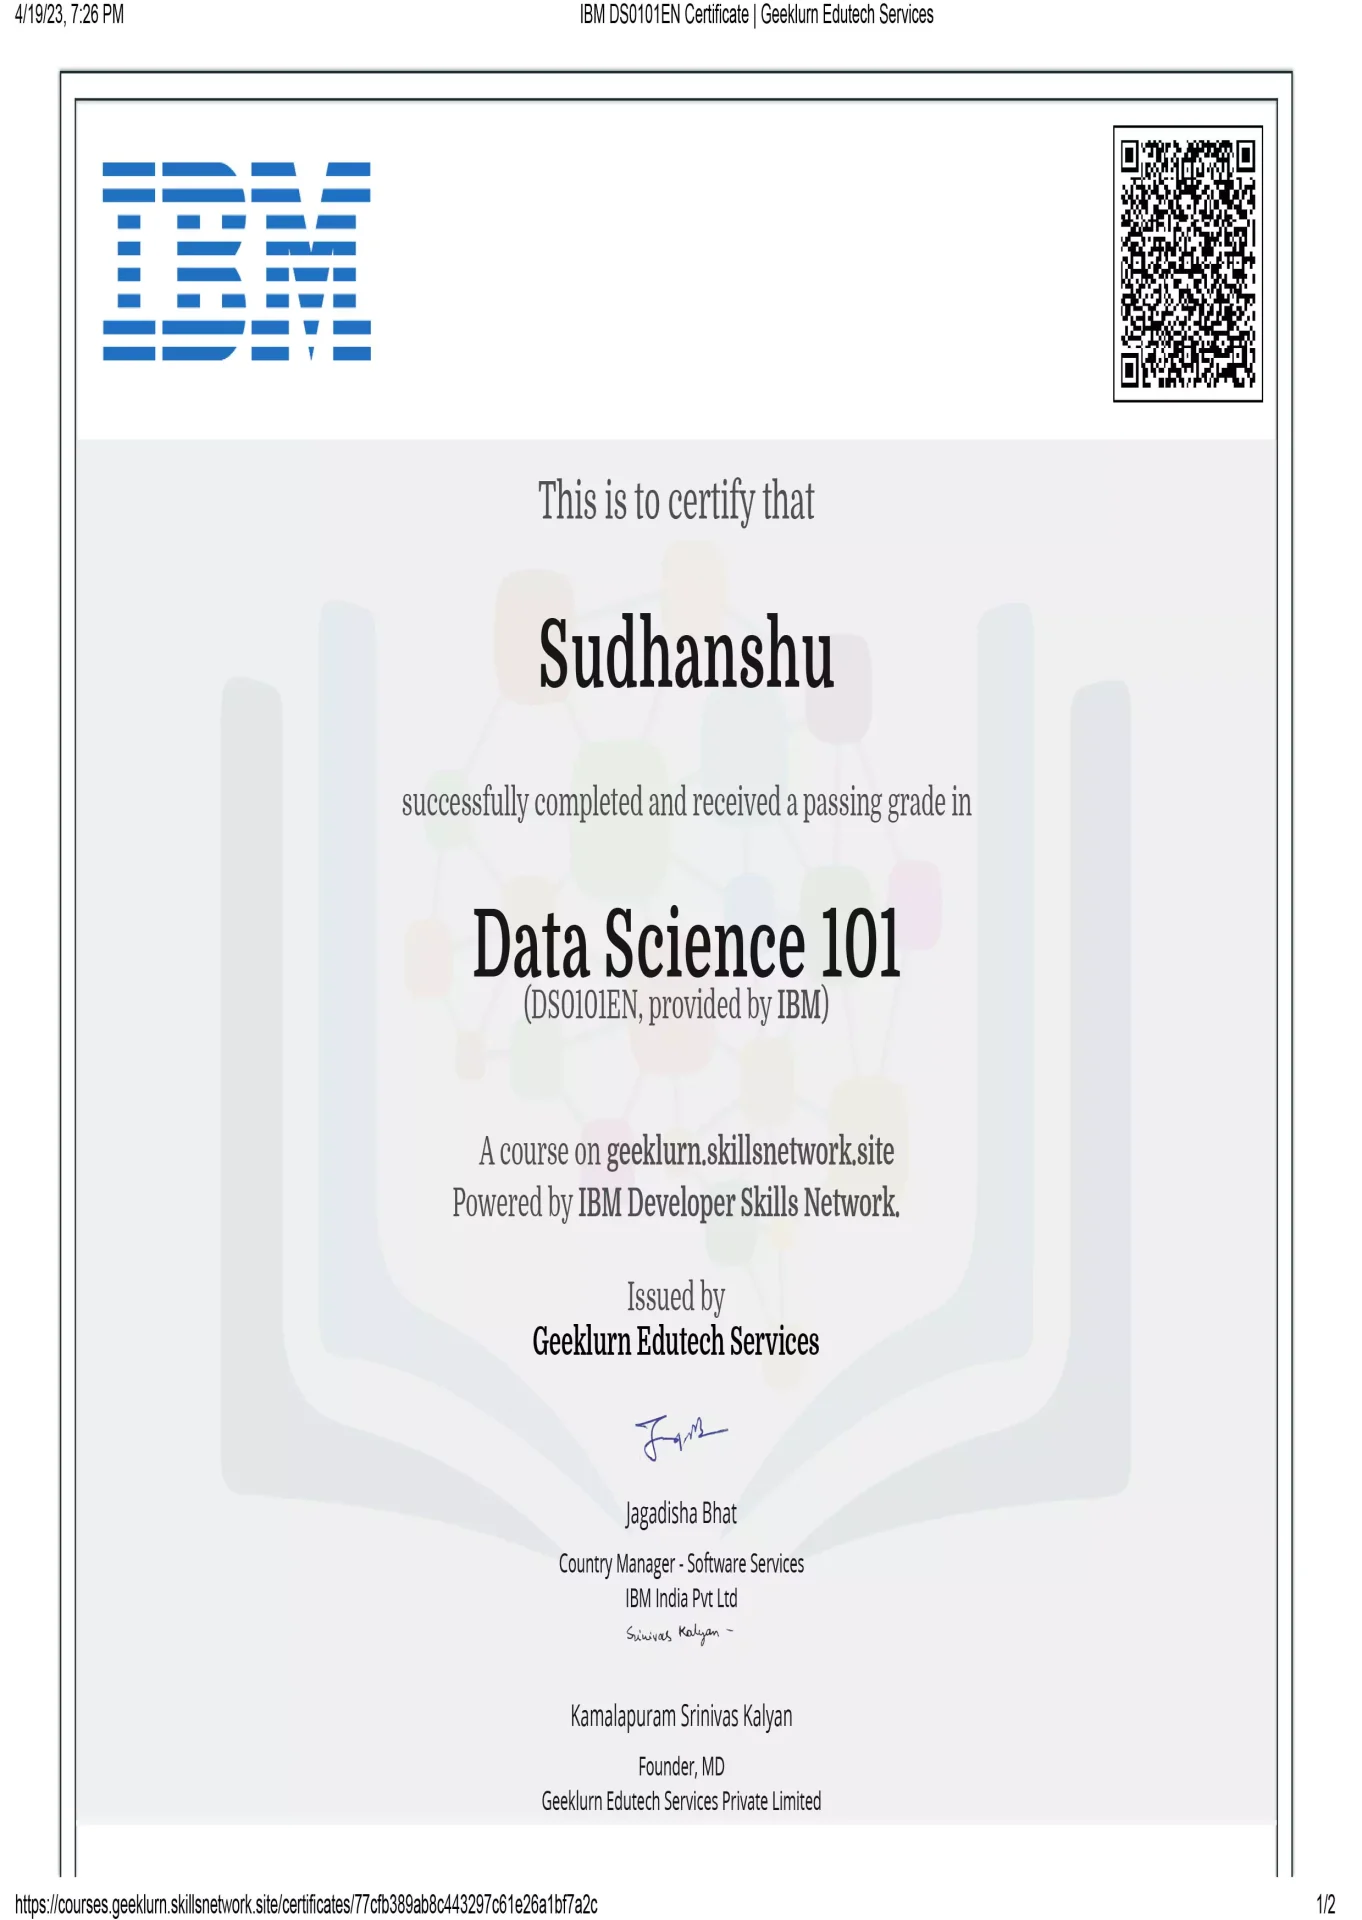 ibm-ds0101en-certificate-geeklurn-edutech-services-4